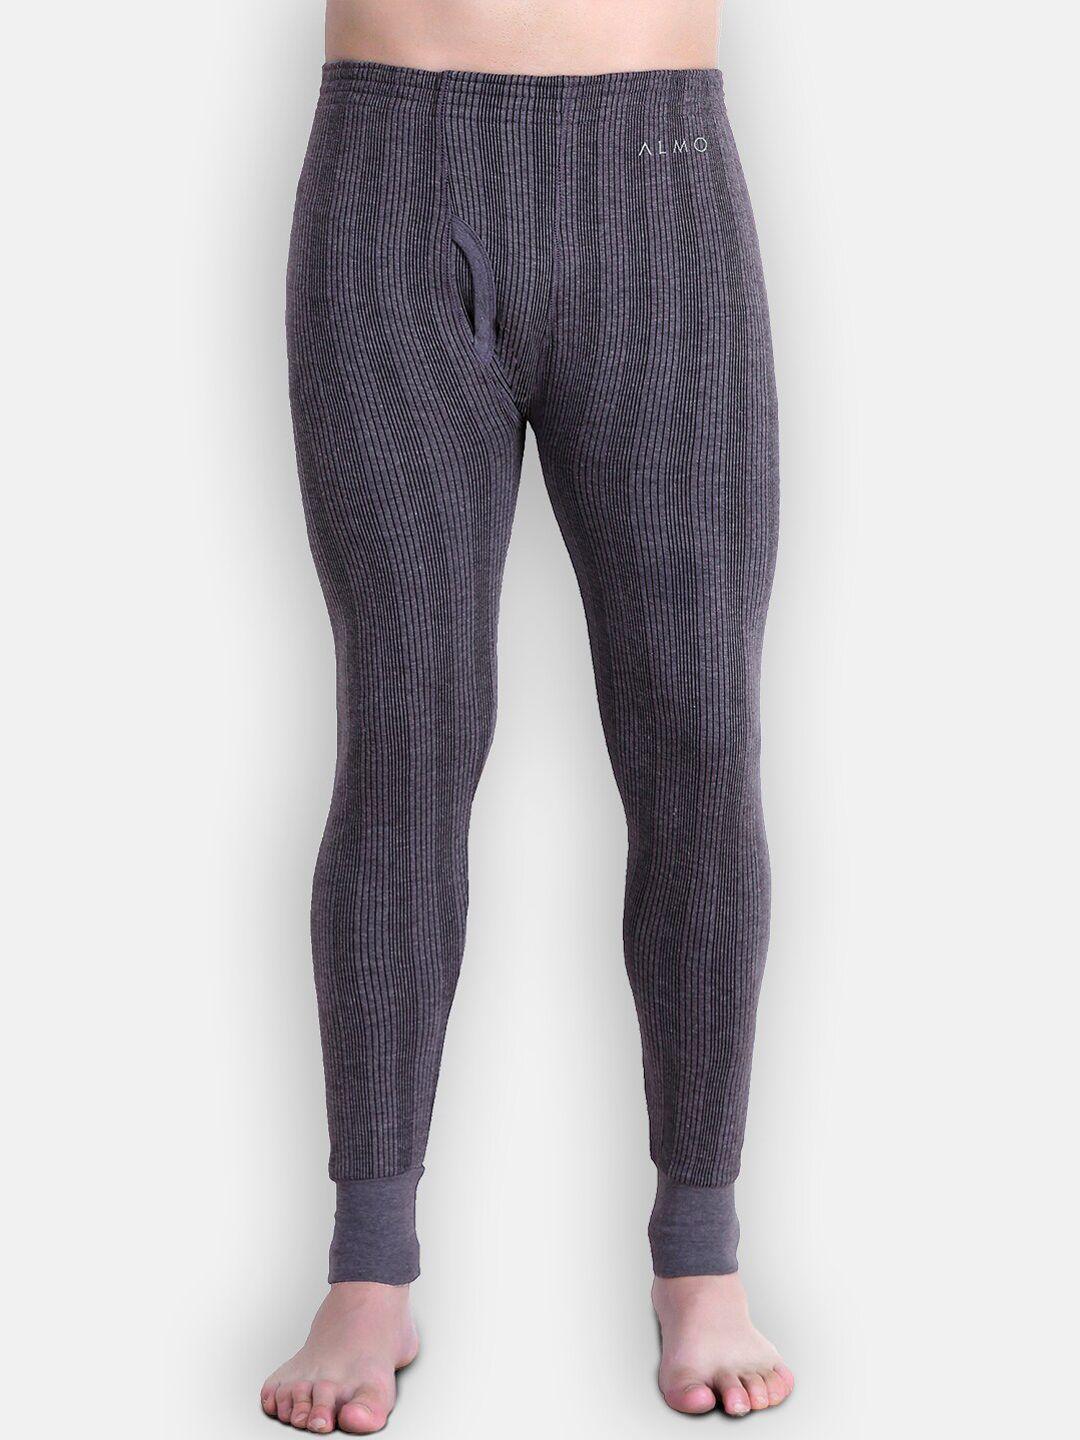 almo wear men grey & black striped cotton thermal pants